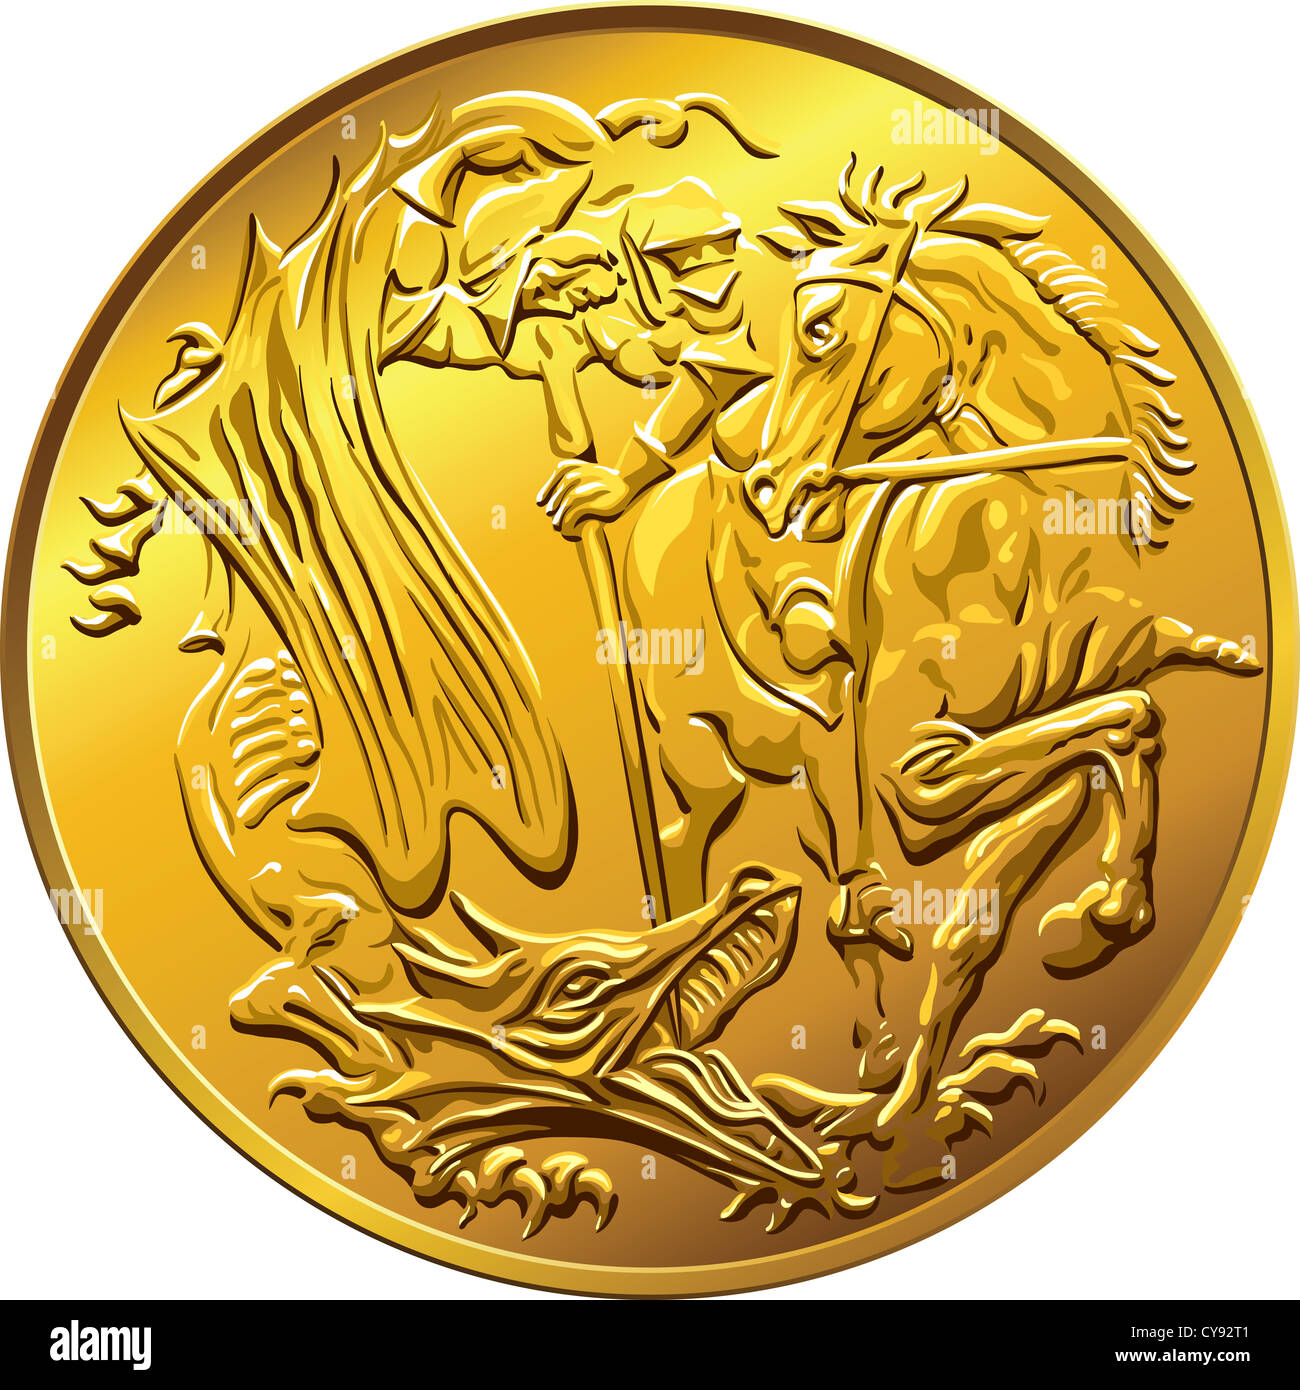 La pièce d'or de l'argent souverain, avec l'image de Saint Georges terrassant le serpent, isolé sur fond blanc Banque D'Images